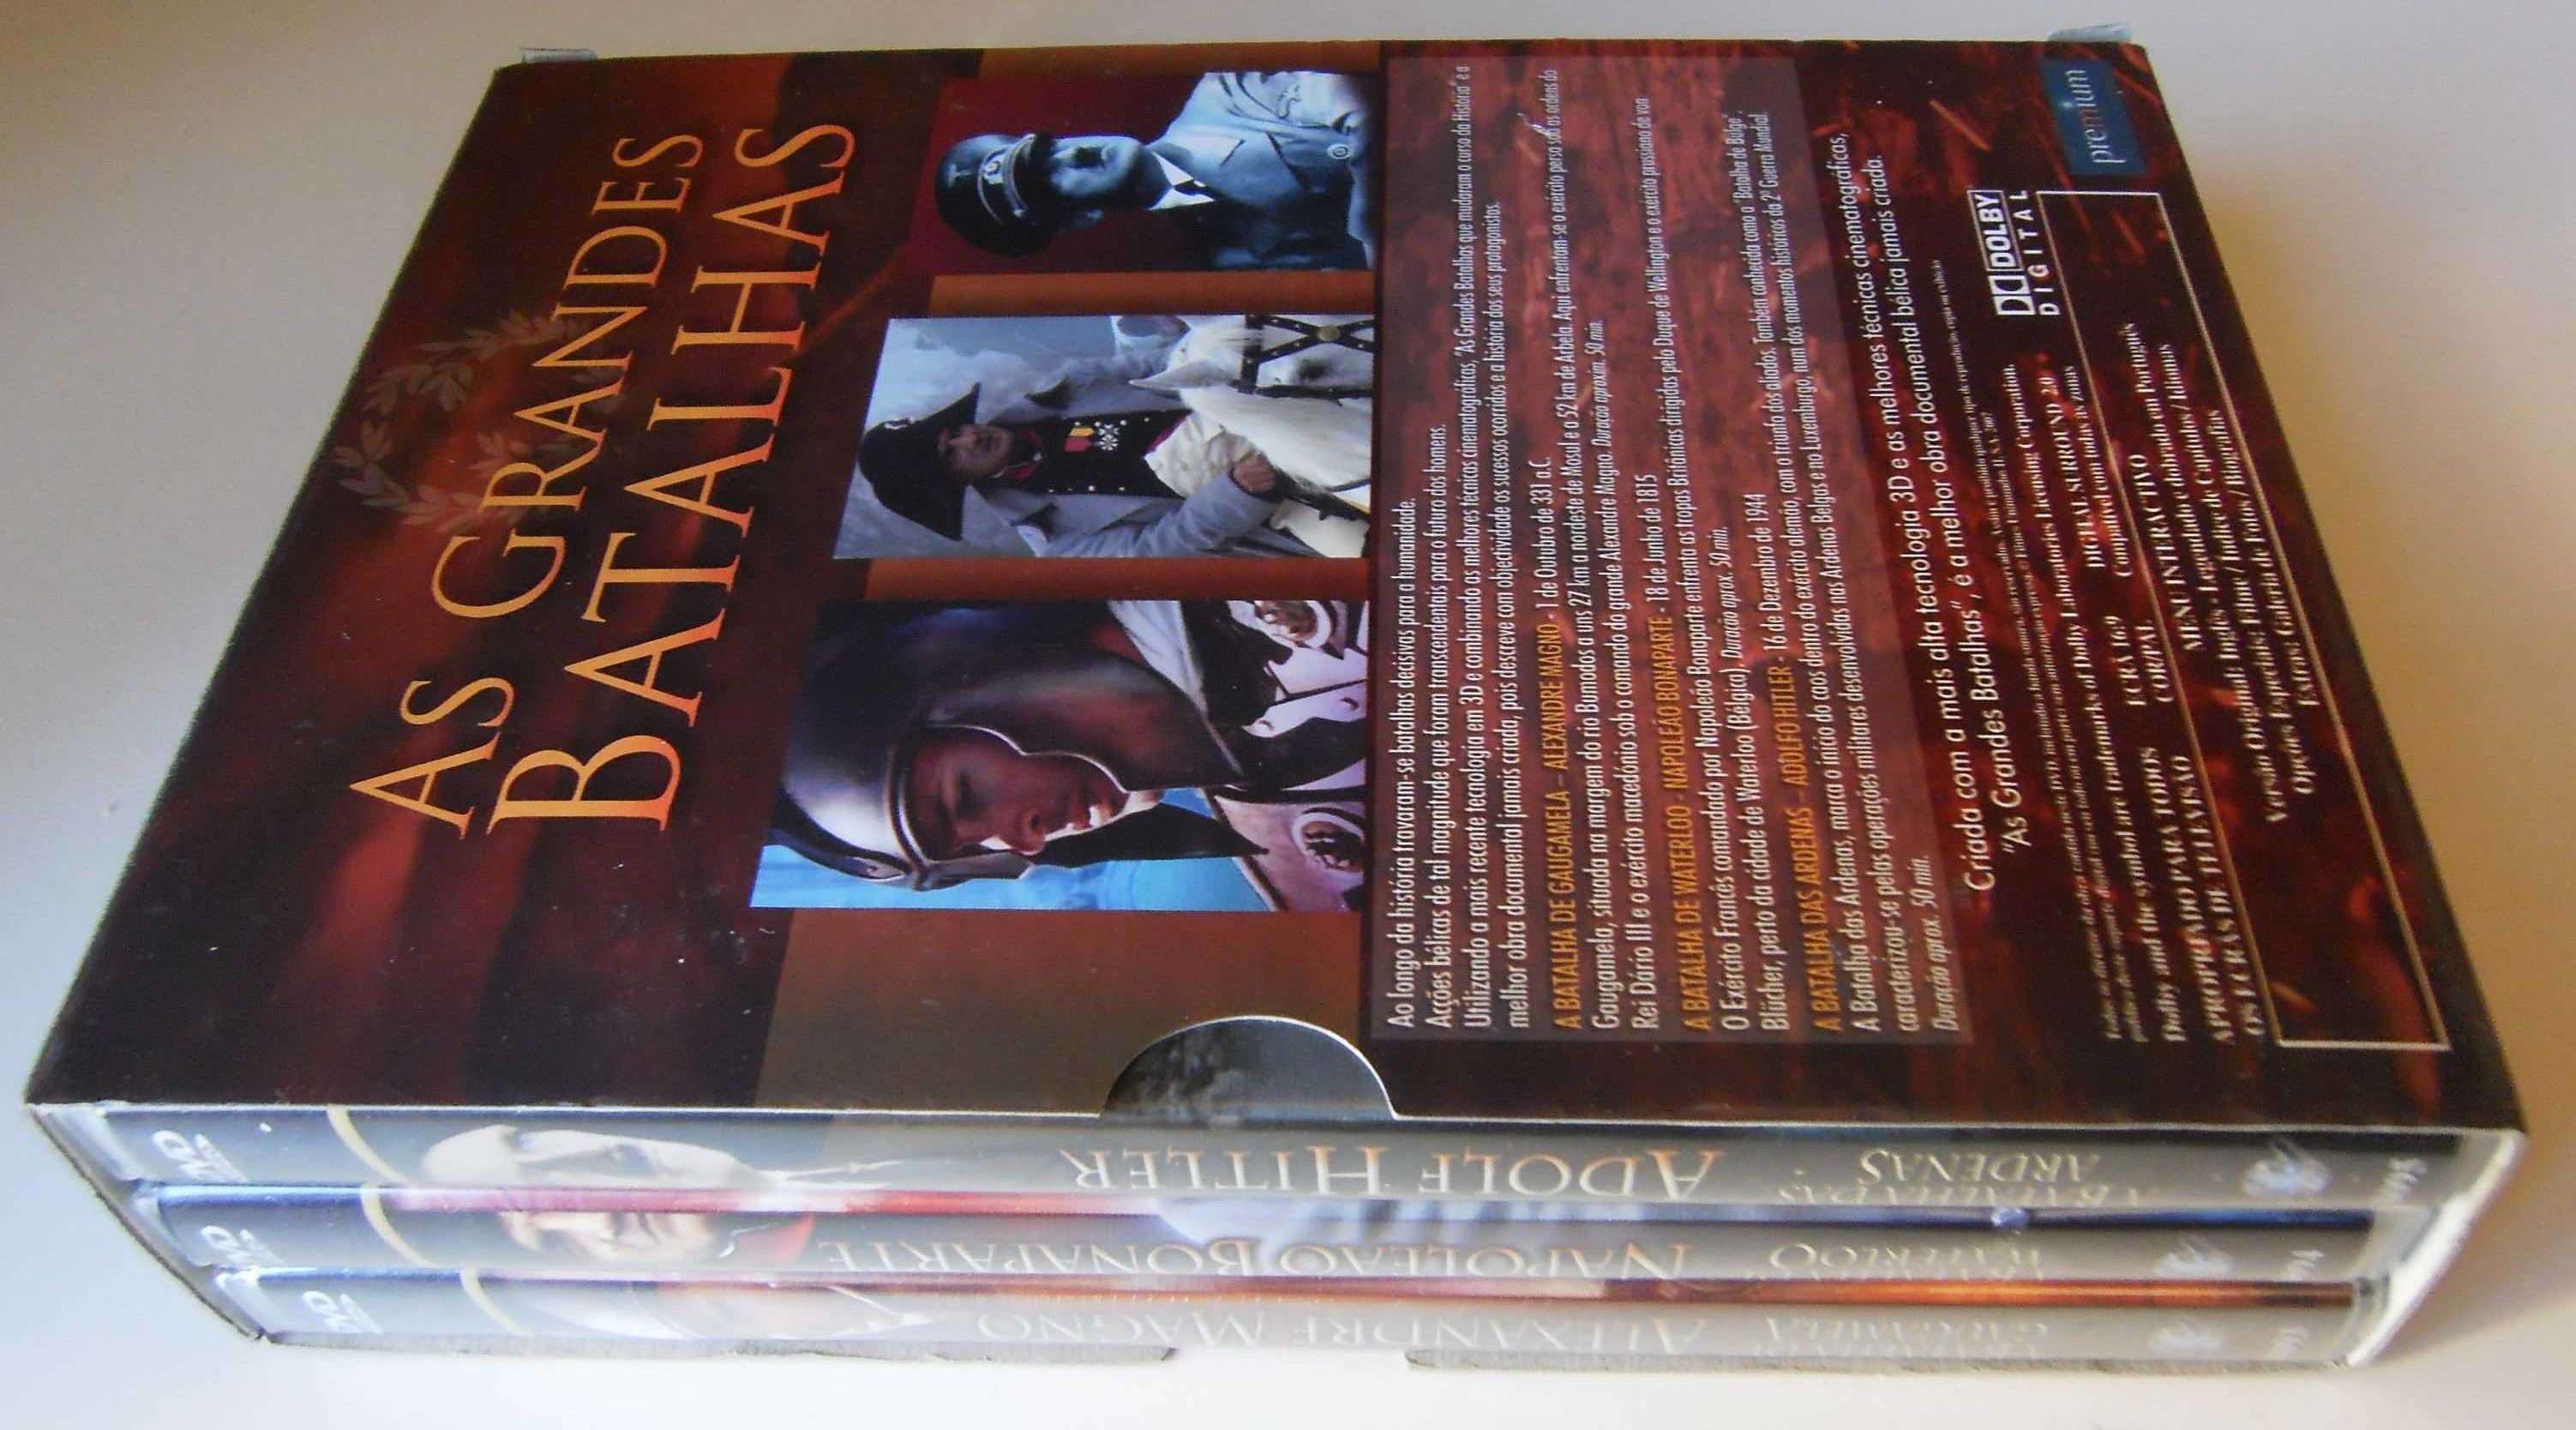 Pack 3 DVD-As Grandes Batalhas-Recreações Históricas-Português